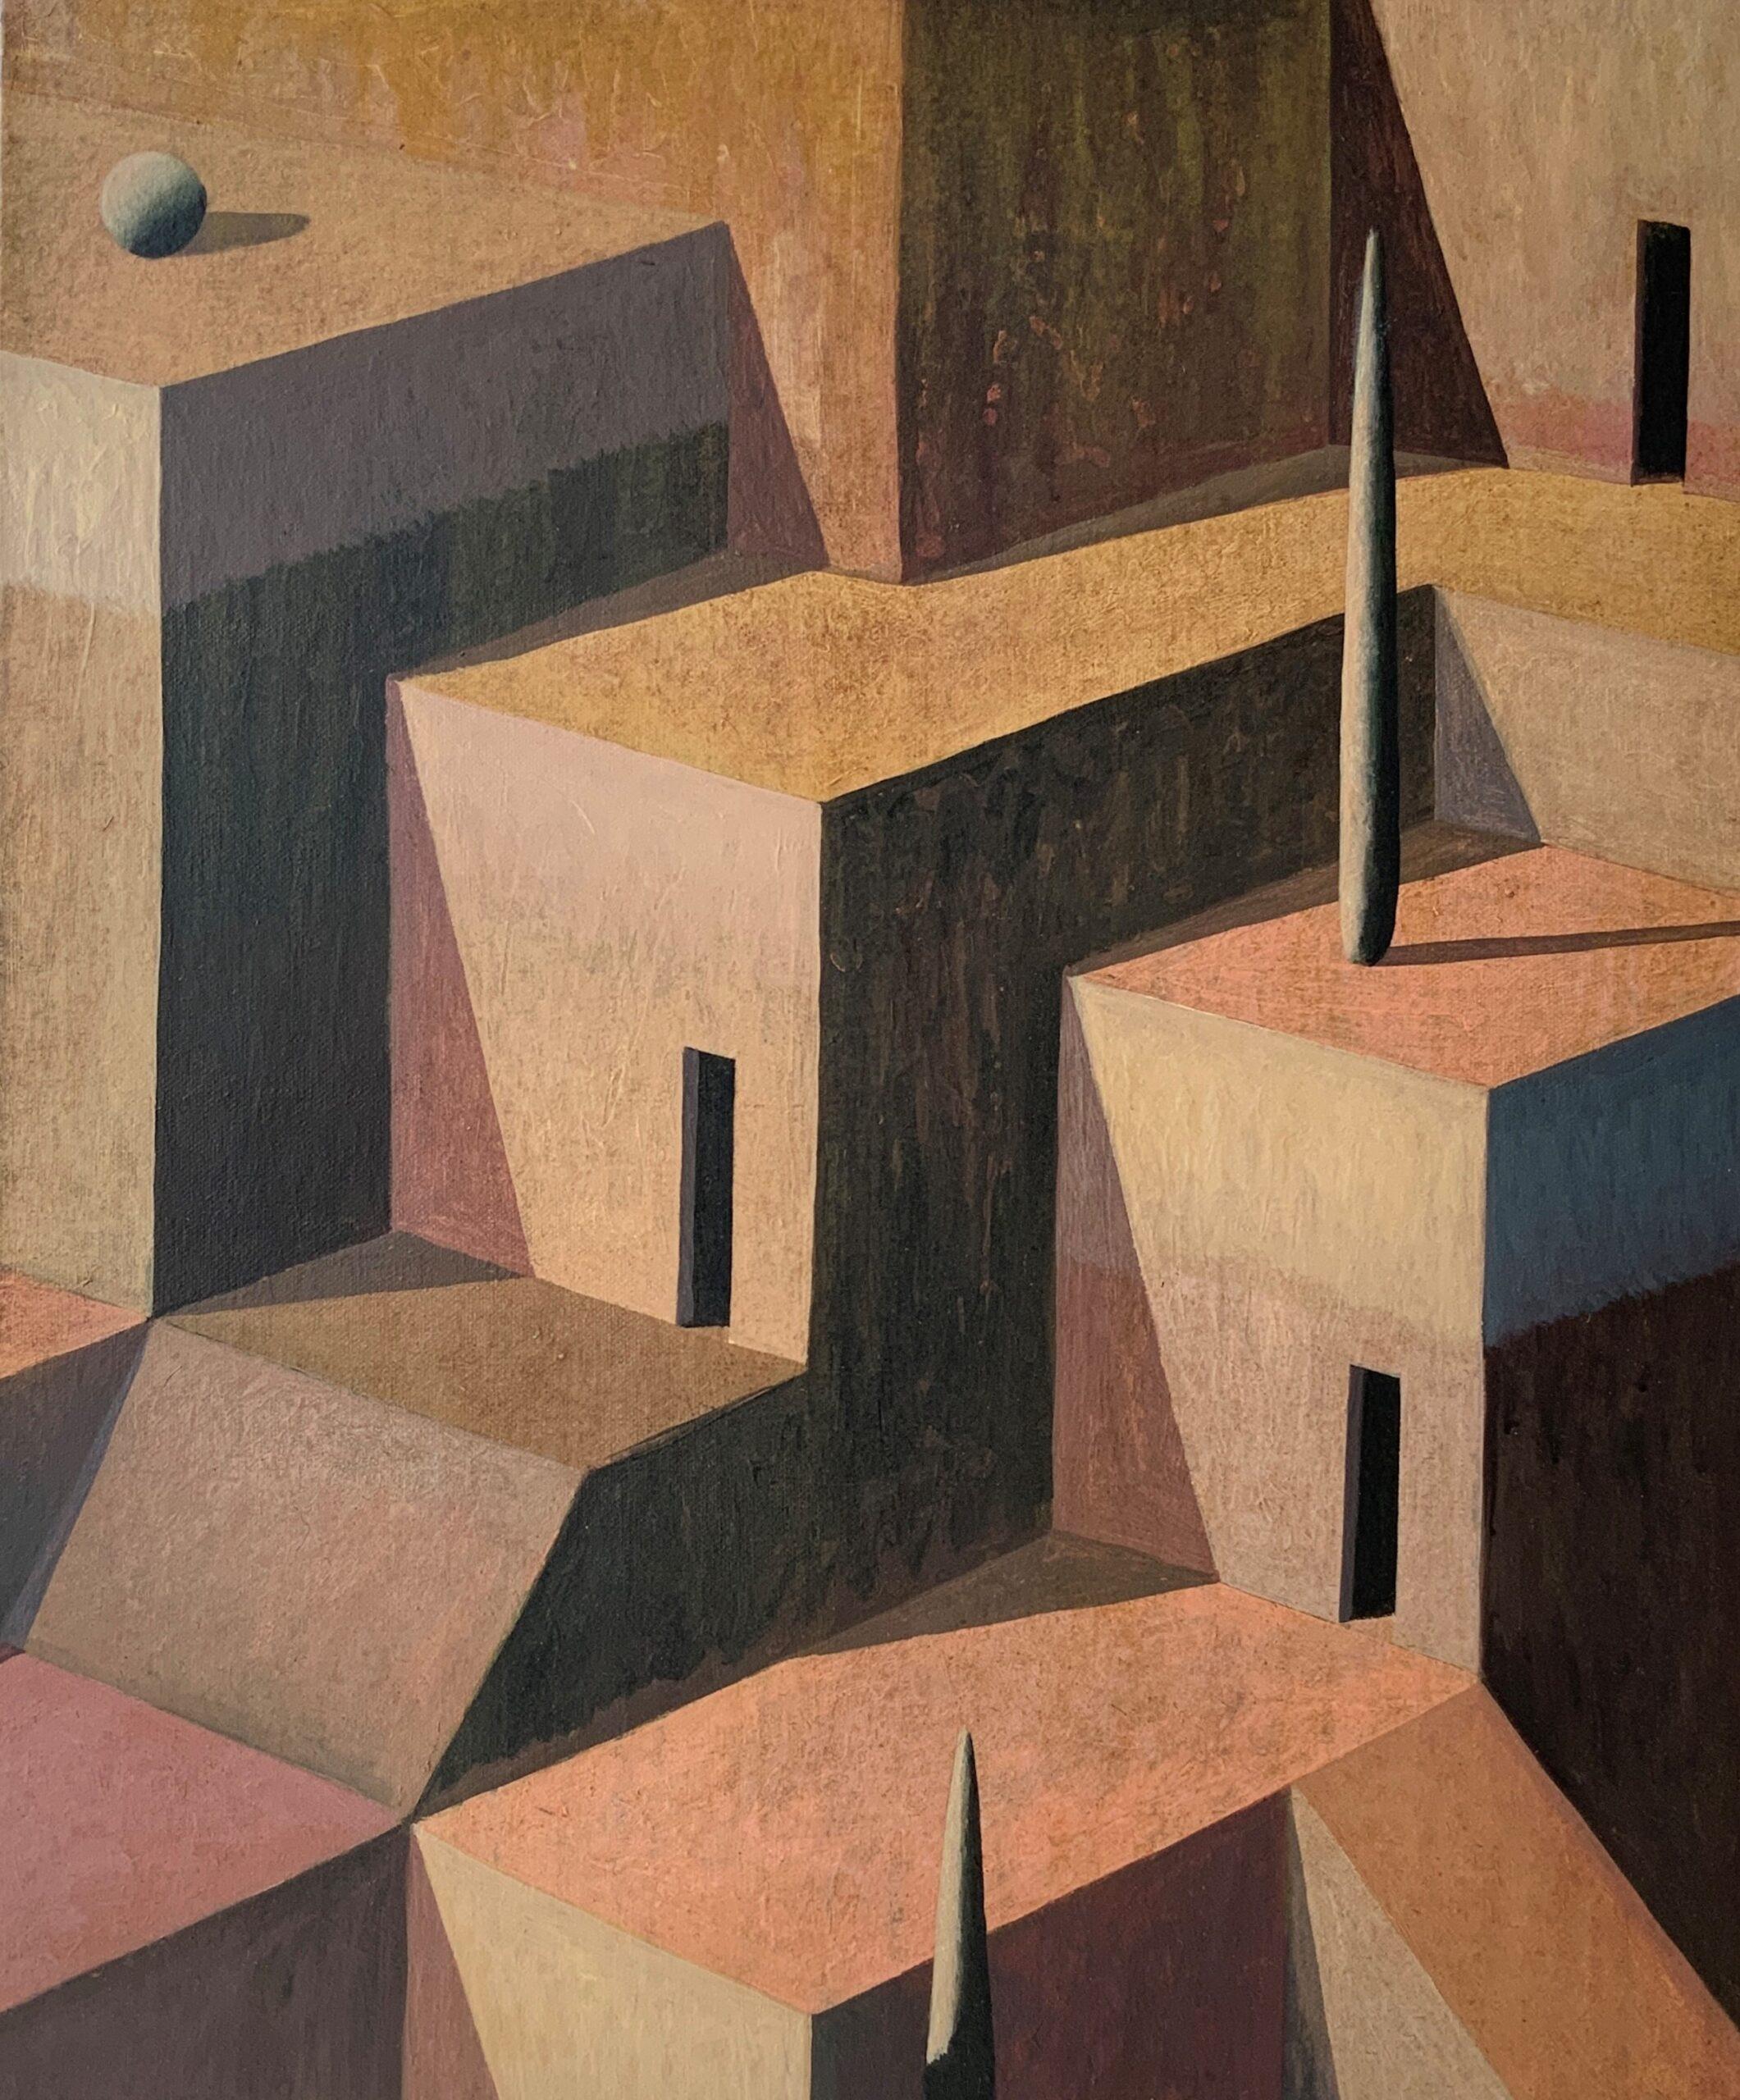 LAB-P est une peinture acrylique sur toile unique de l'artiste contemporain Ramon Enrich, dont les dimensions sont de 60 × 50 cm (23,6 × 19,7 in).  
L'œuvre est signée, vendue non encadrée et accompagnée d'un certificat d'authenticité.   

Ramon HAR